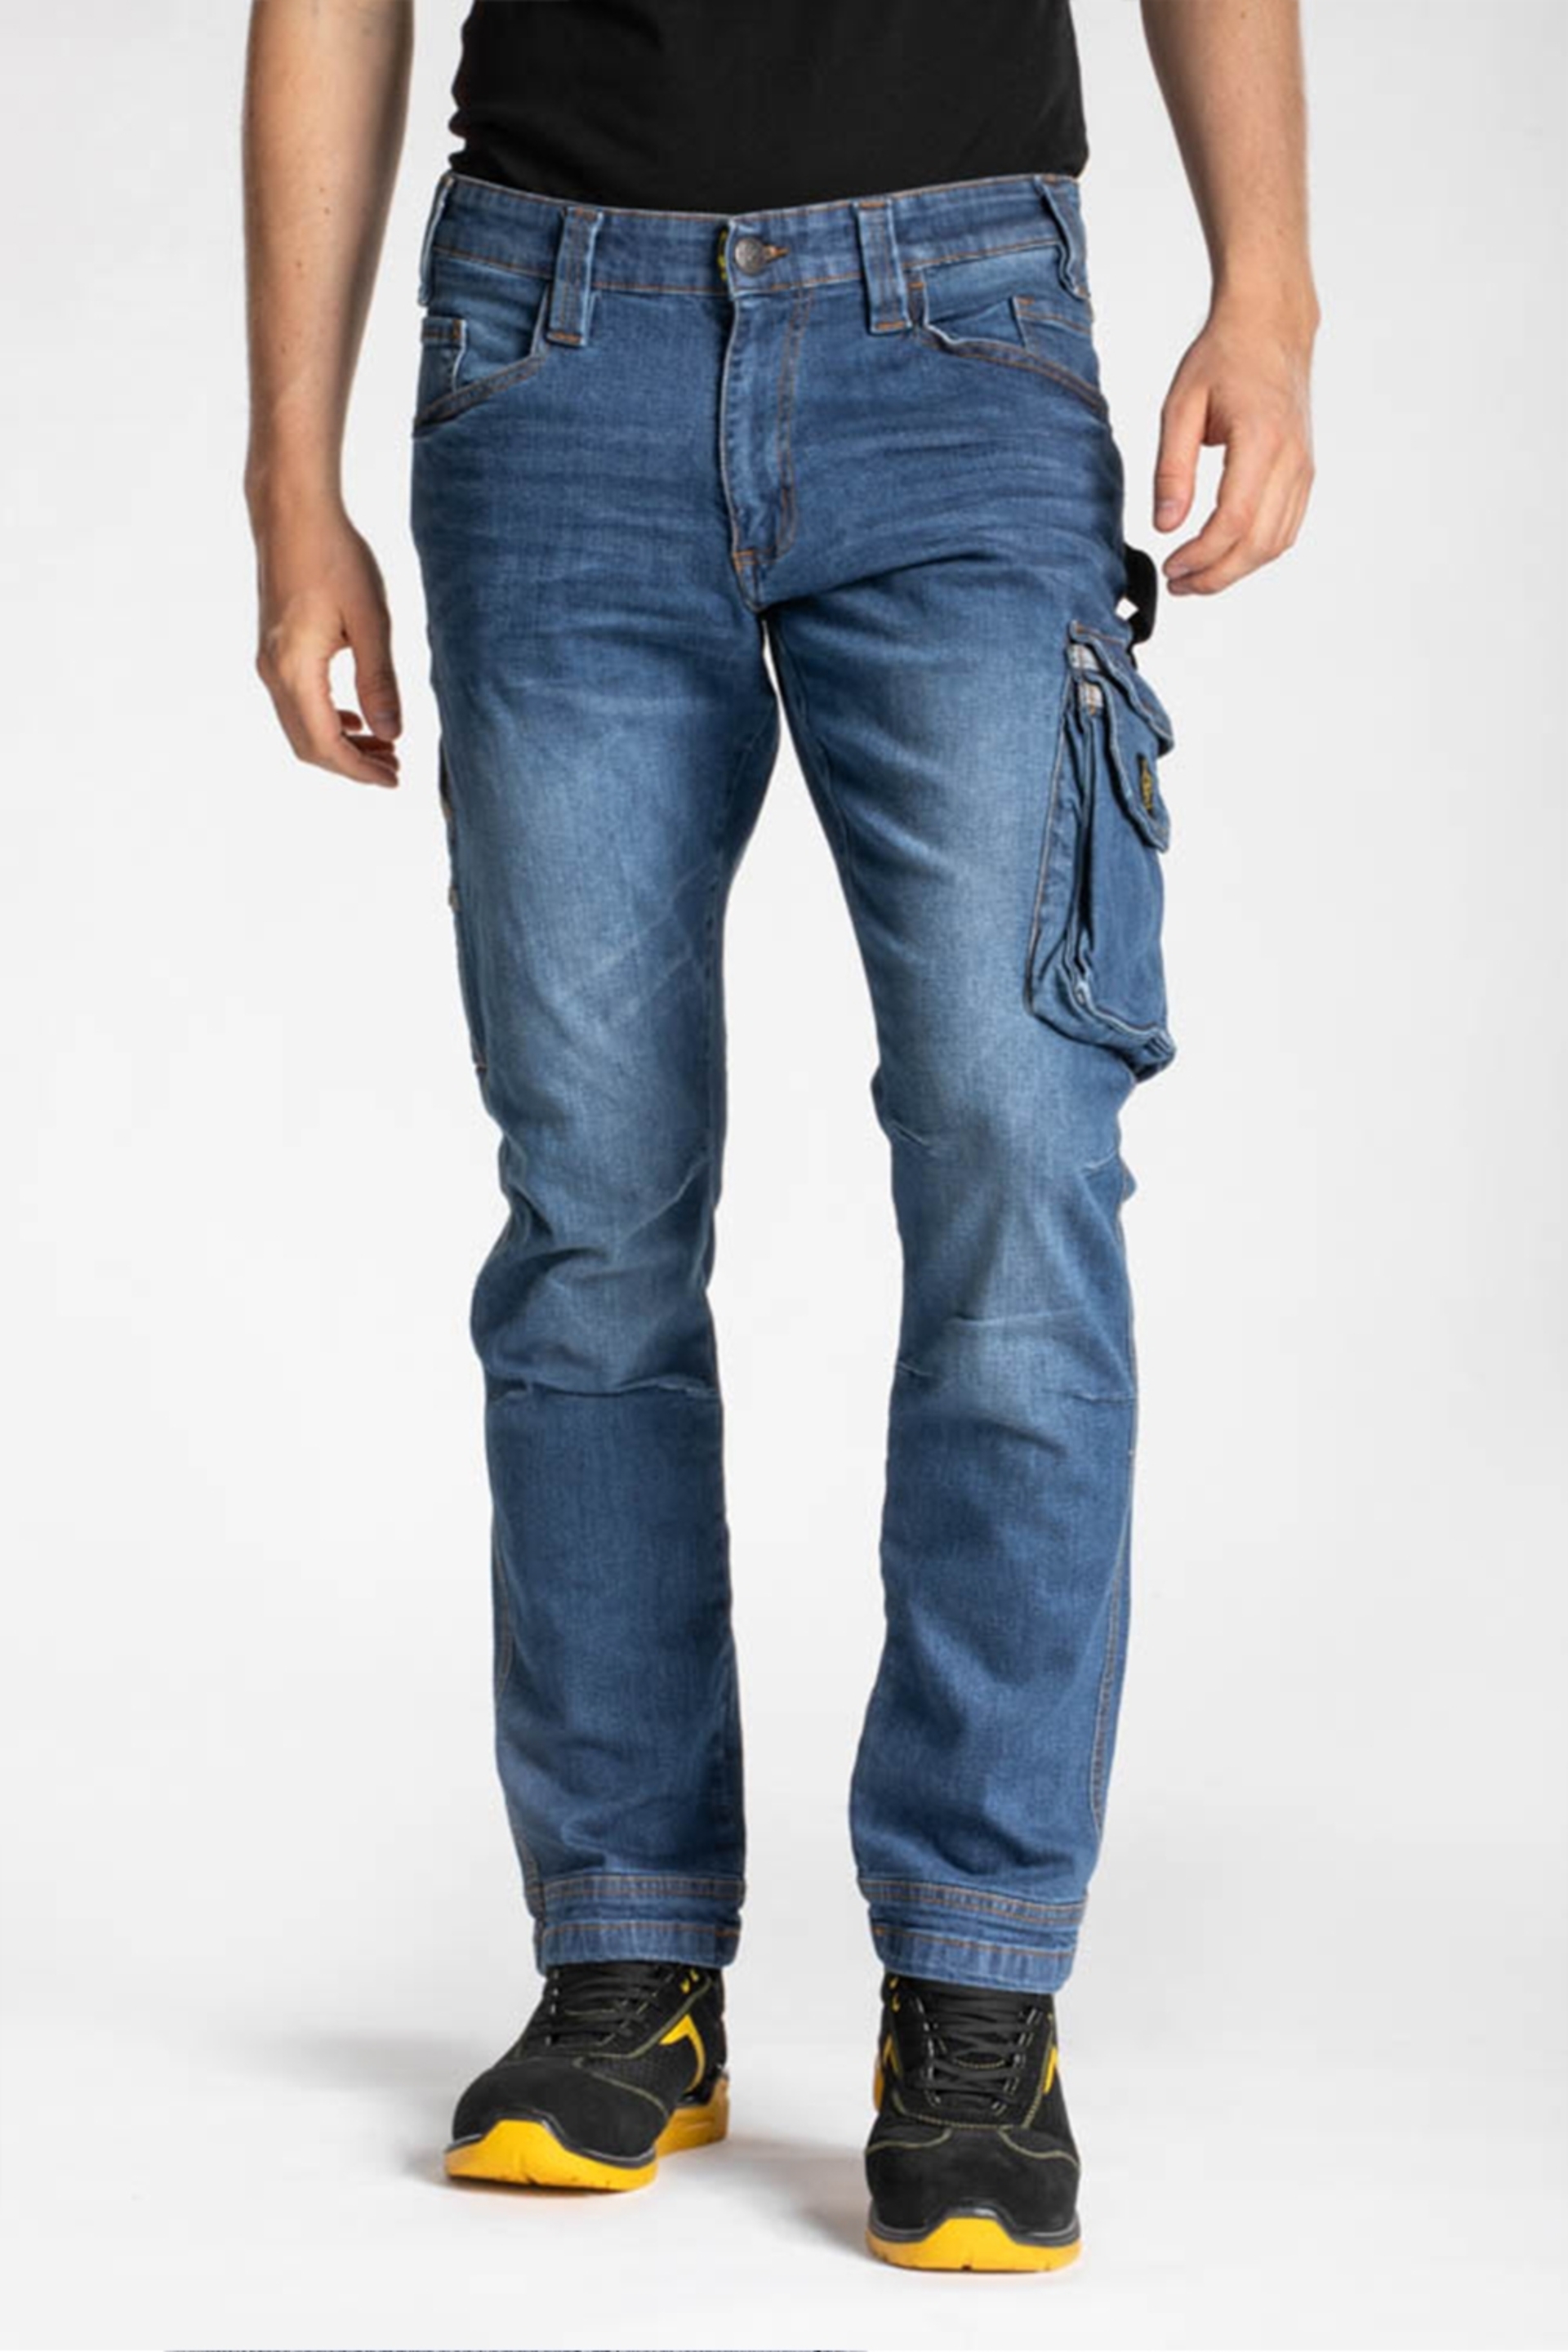 Kalhoty do pasu RICA LEWIS JOB jeans modrá  48